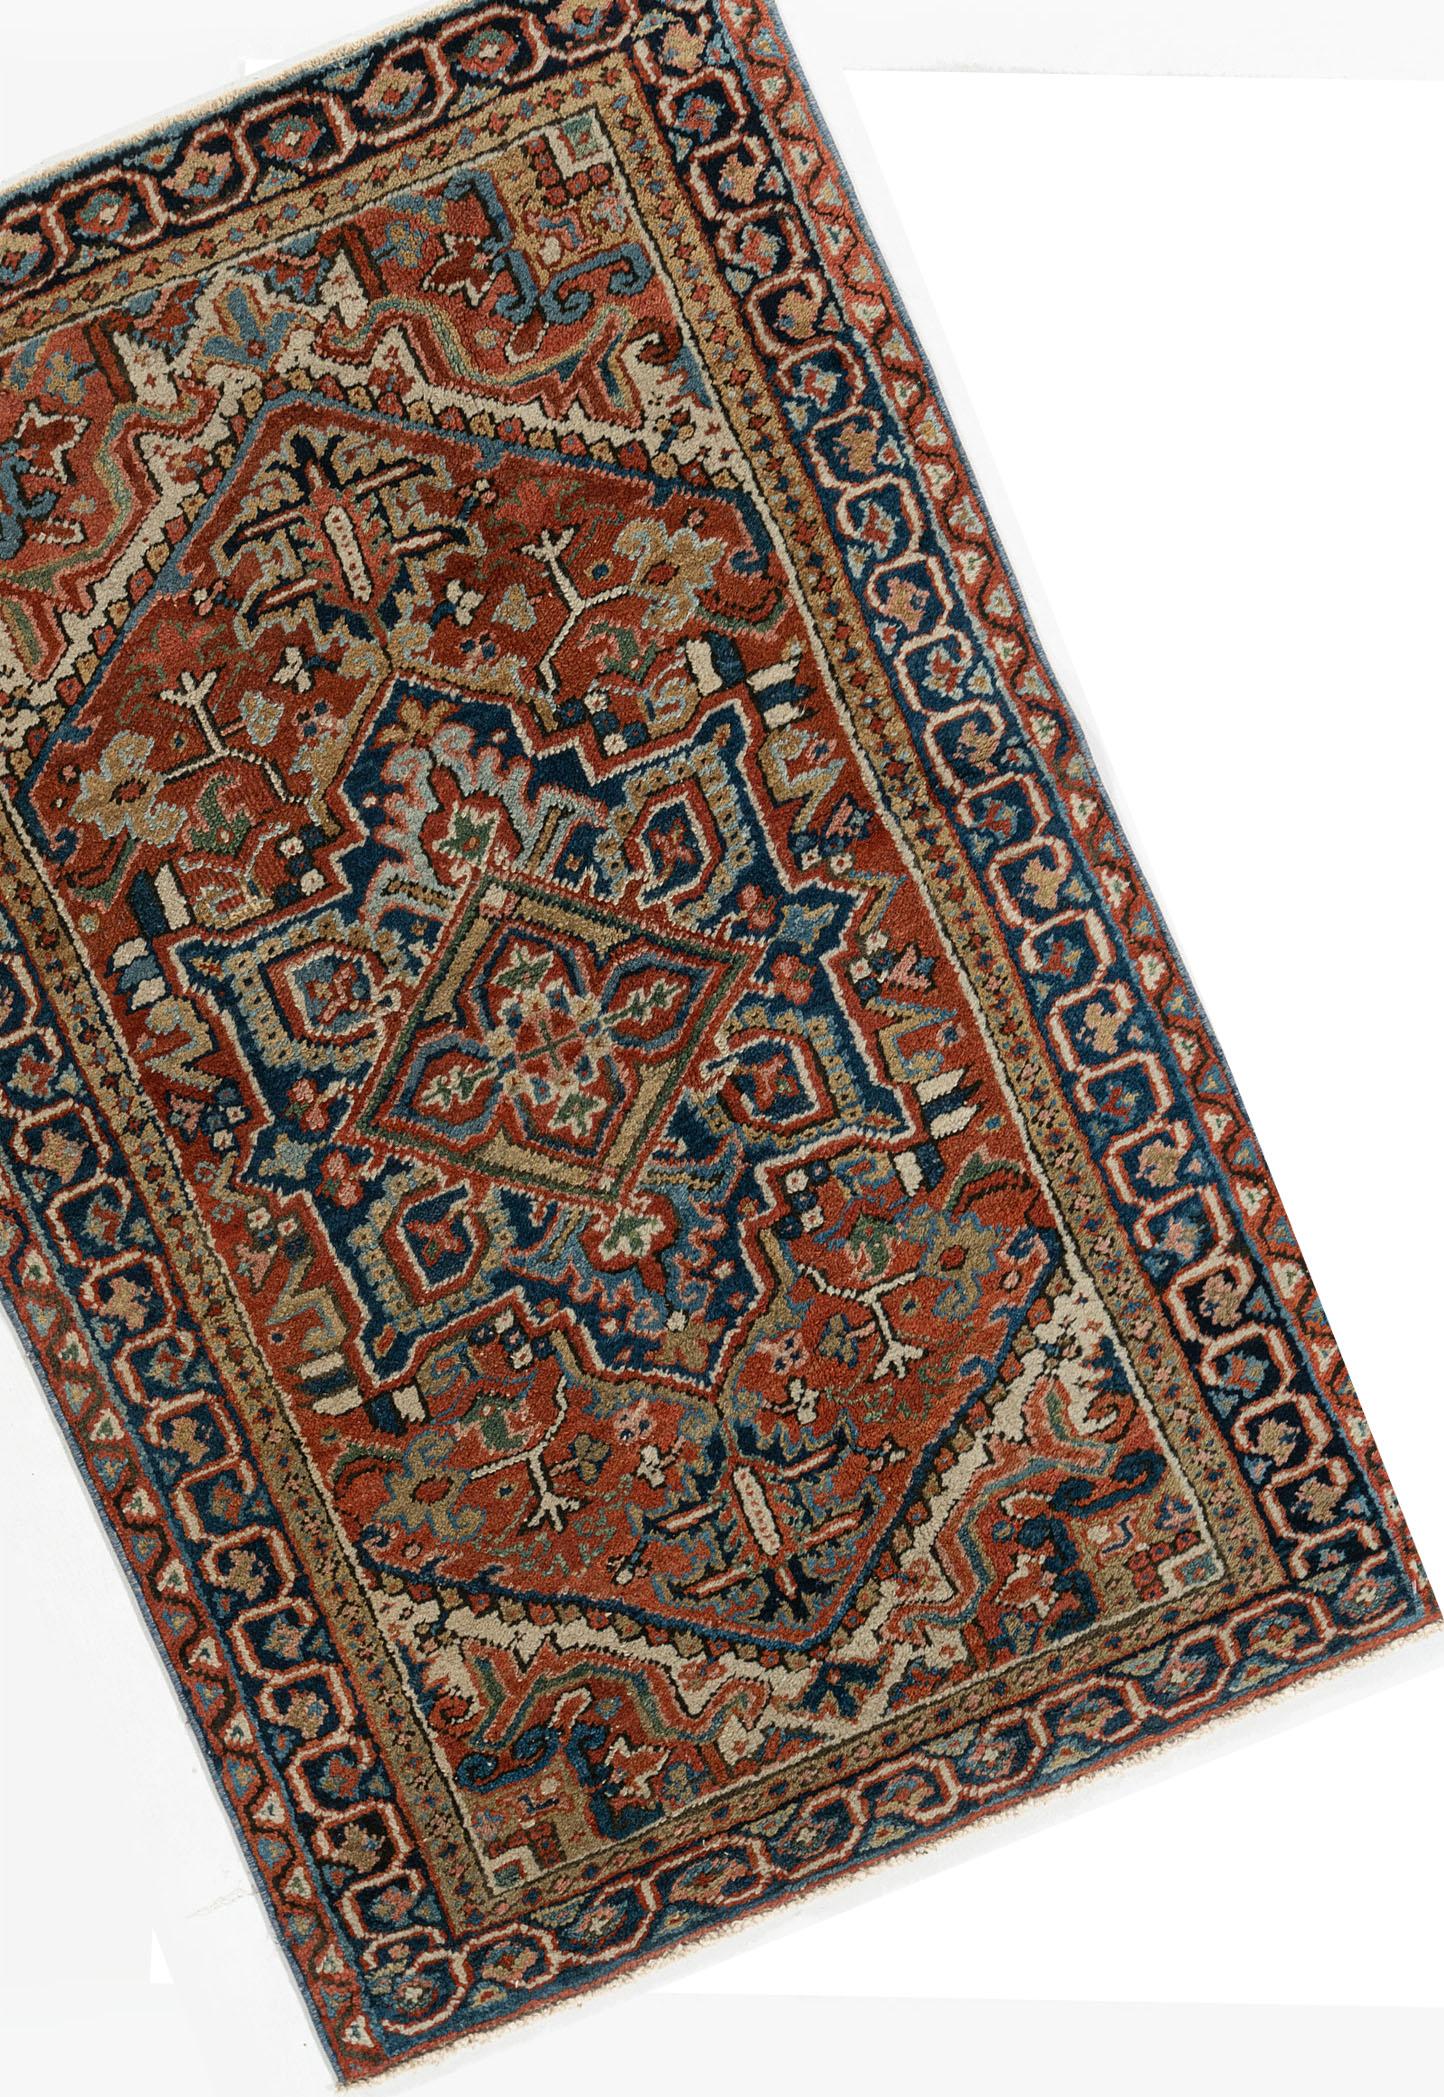 Vintage Persian Heriz area rug 3' X 4'4. Les tapis traditionnels Heriz, fabriqués à la main, sont à la mode et peuvent être collectionnés. Ils sont habilement tissés dans des couleurs vibrantes et des motifs géométriques emphatiques. Le district de